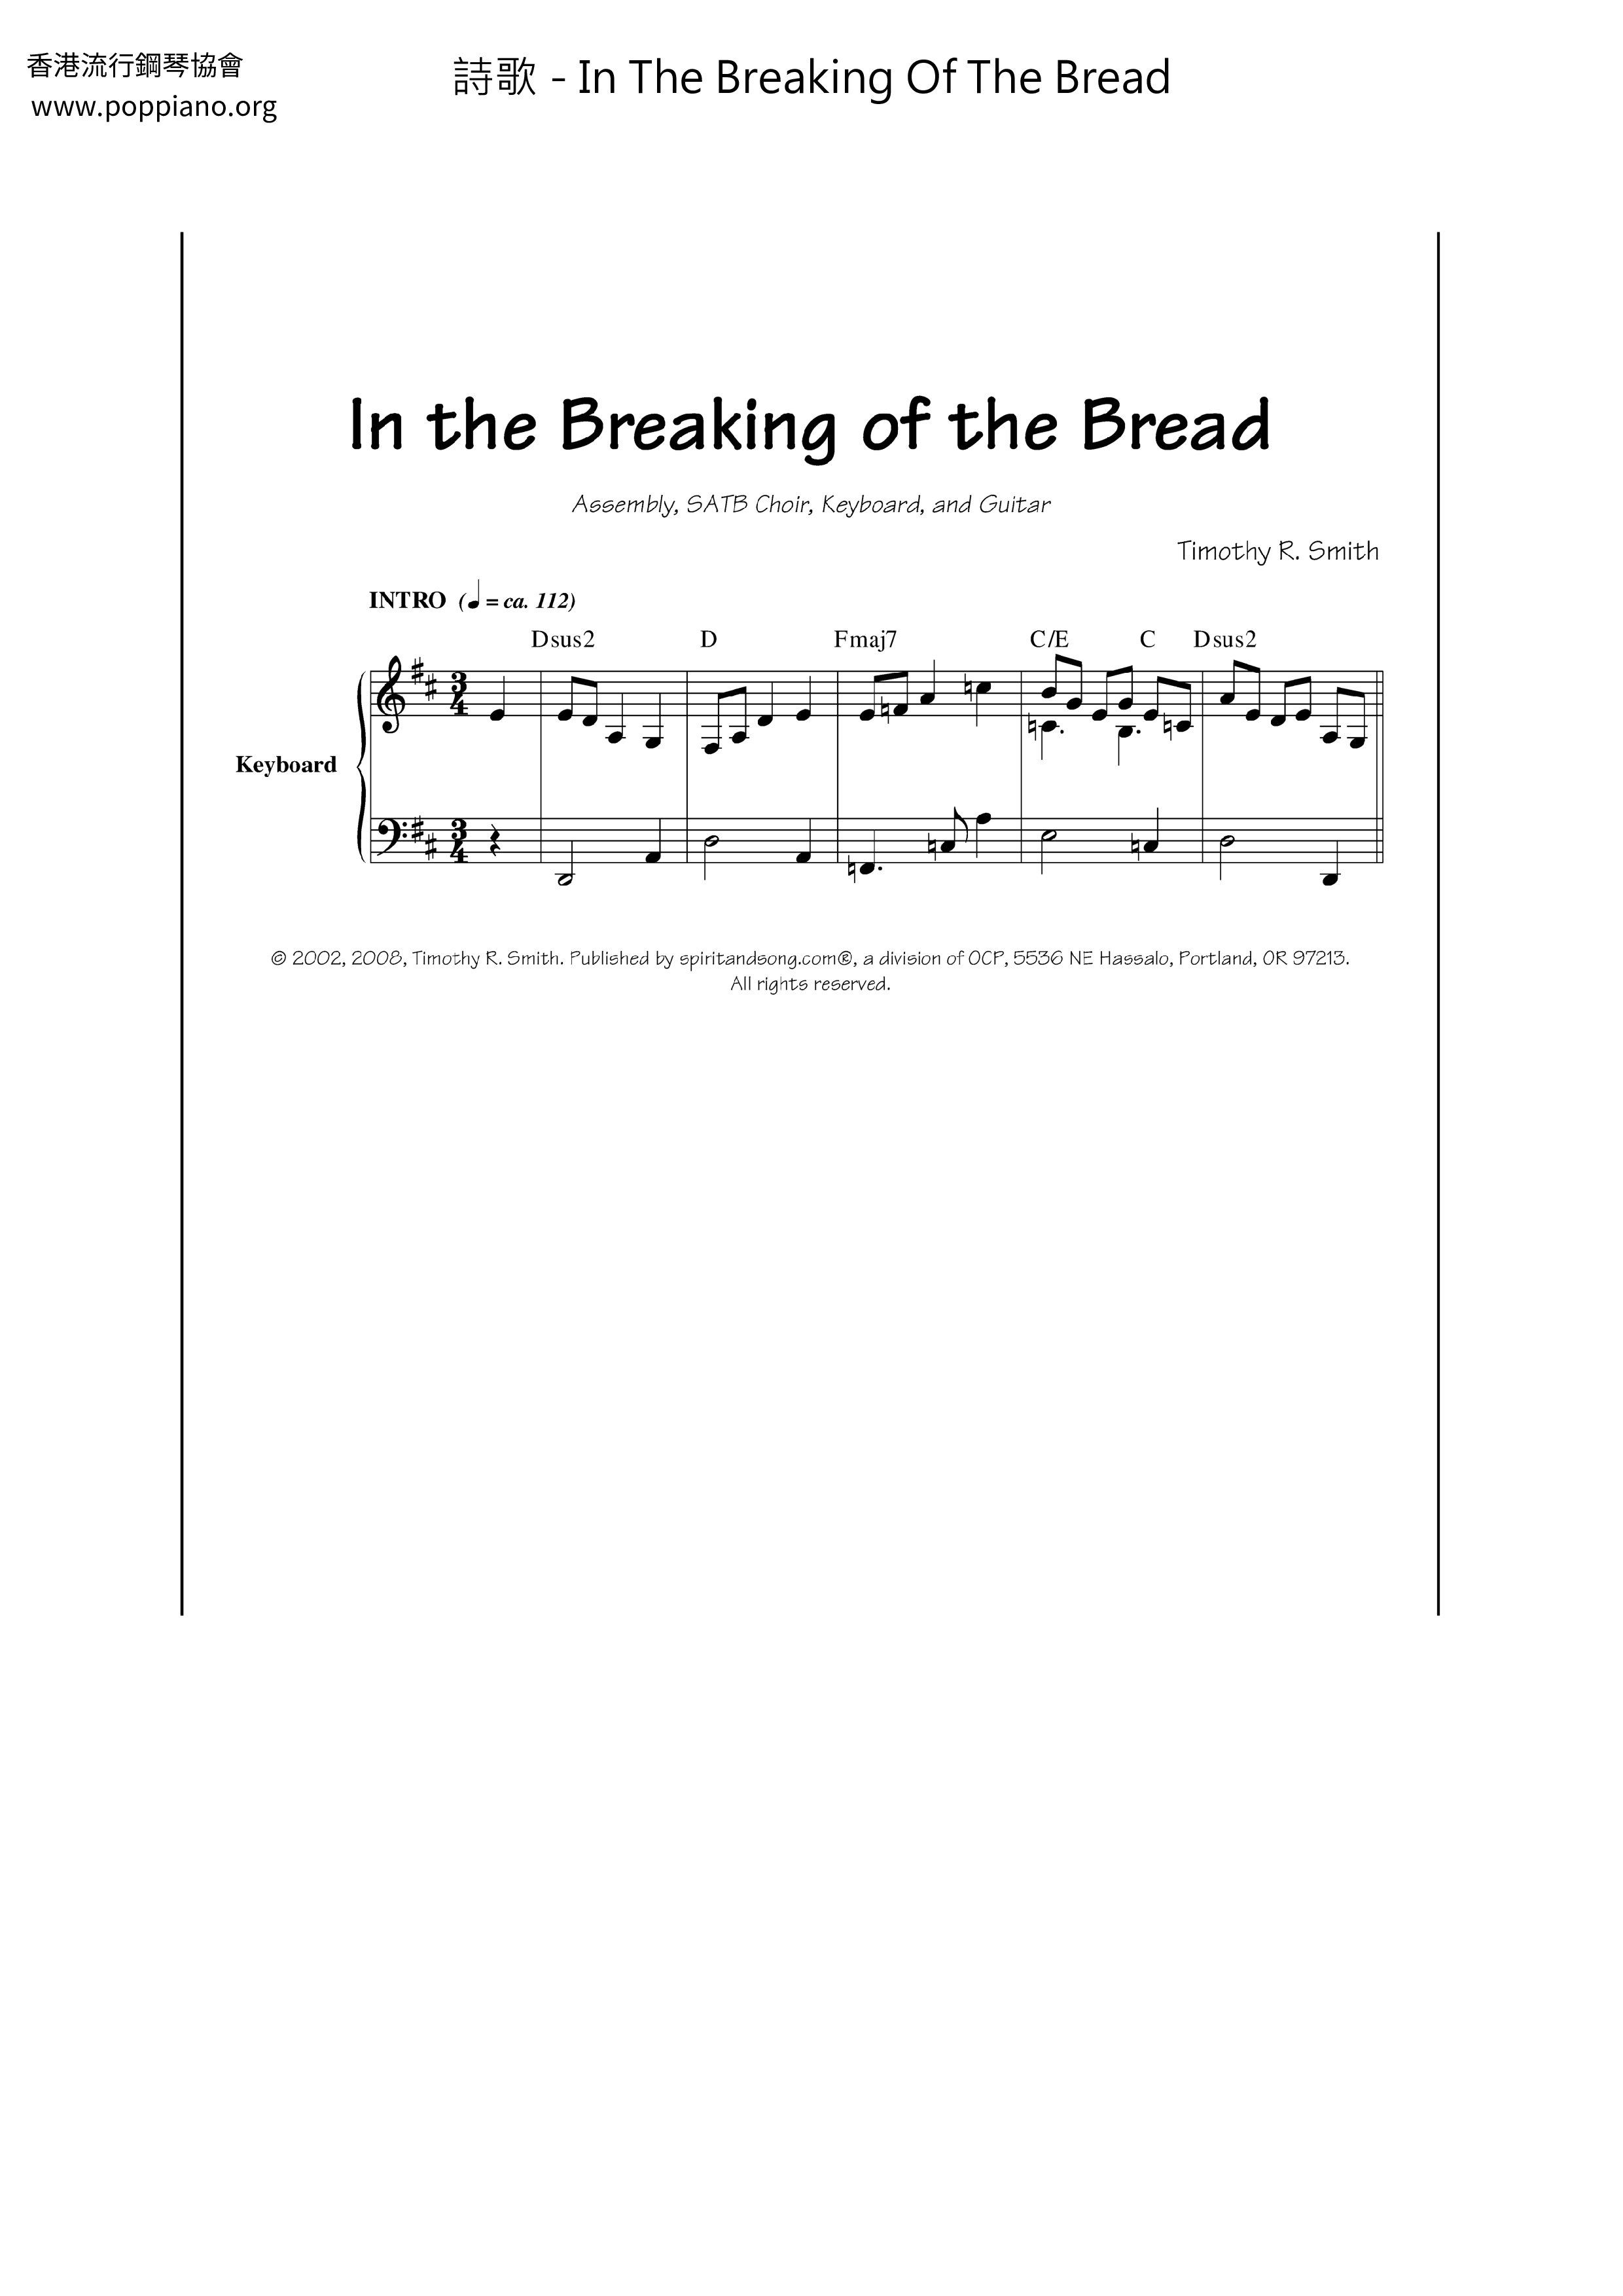 In The Breaking Of The Bread Score